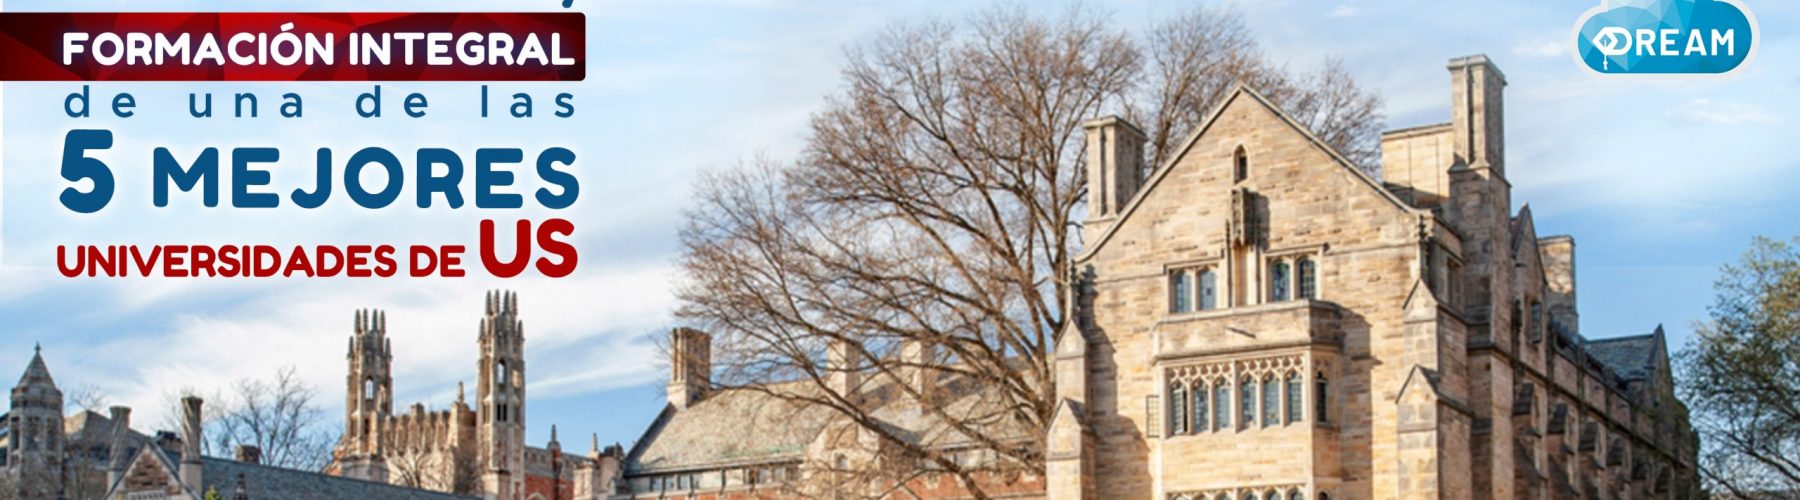 Yale University:  formación integral de una institución top 5 en US.